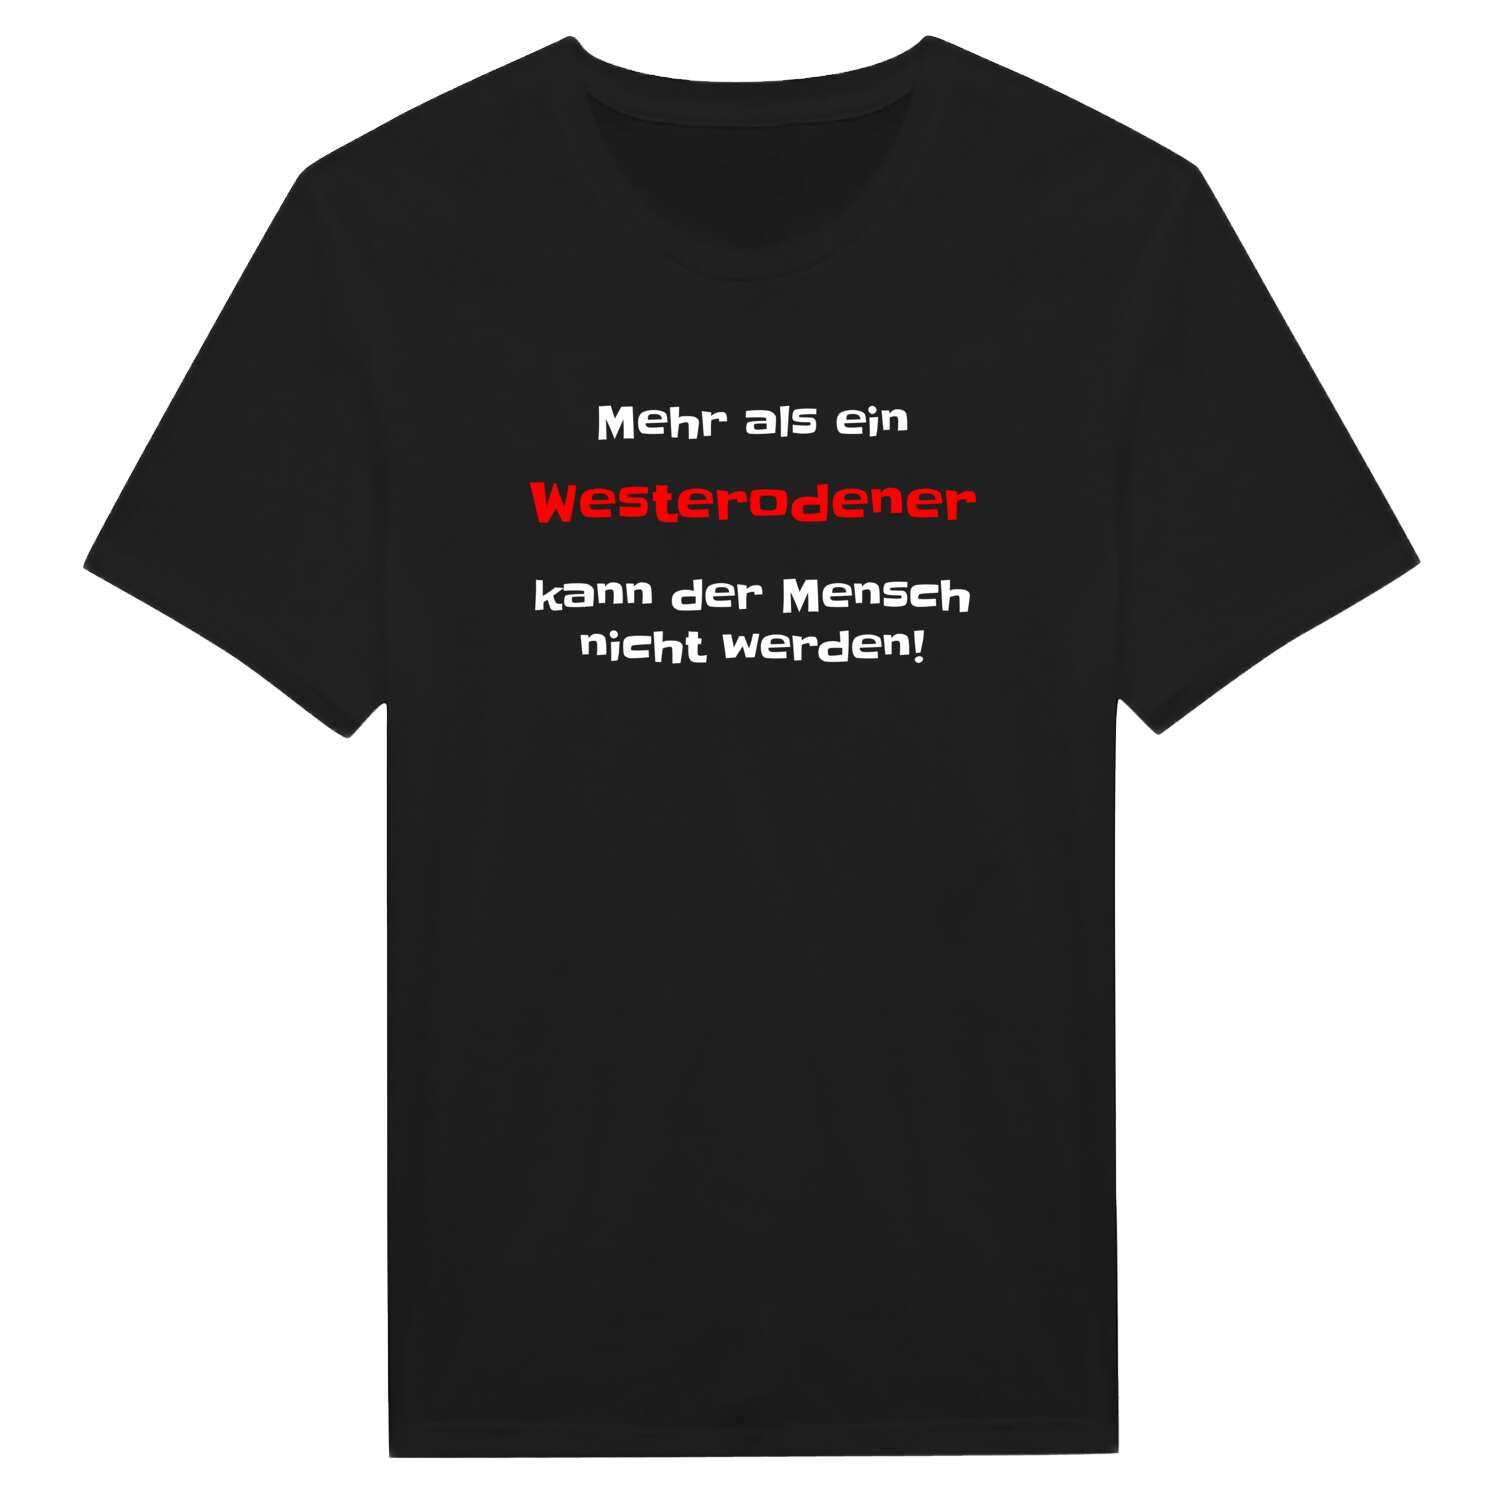 Westerode T-Shirt »Mehr als ein«